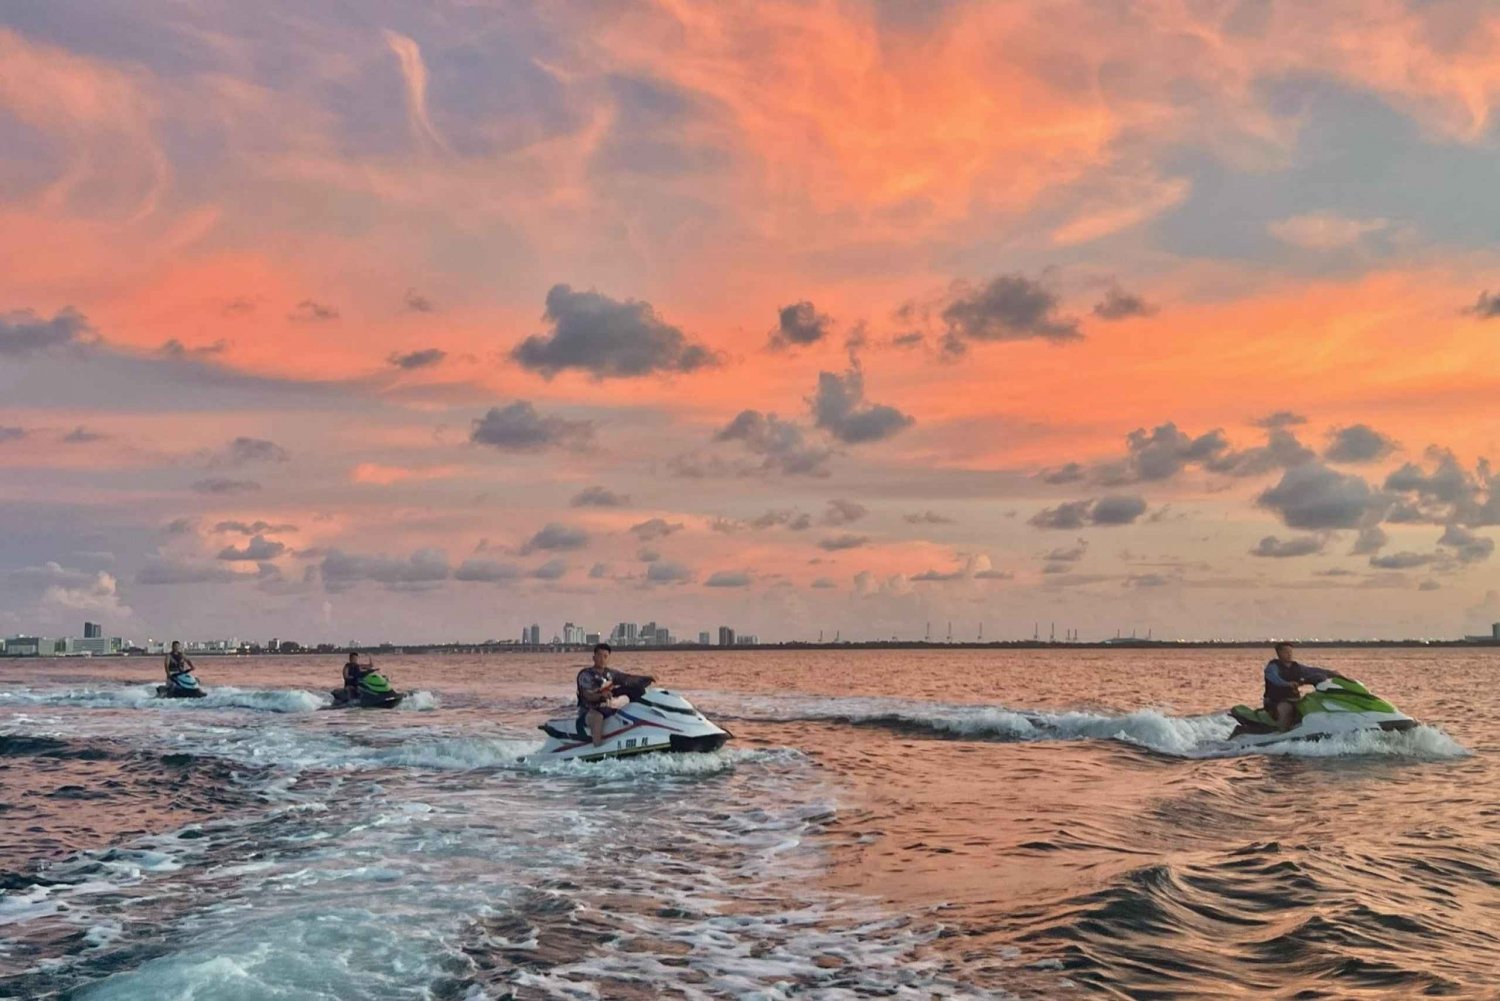 Miami Beach : Location de WaveRunner et tour en bateau